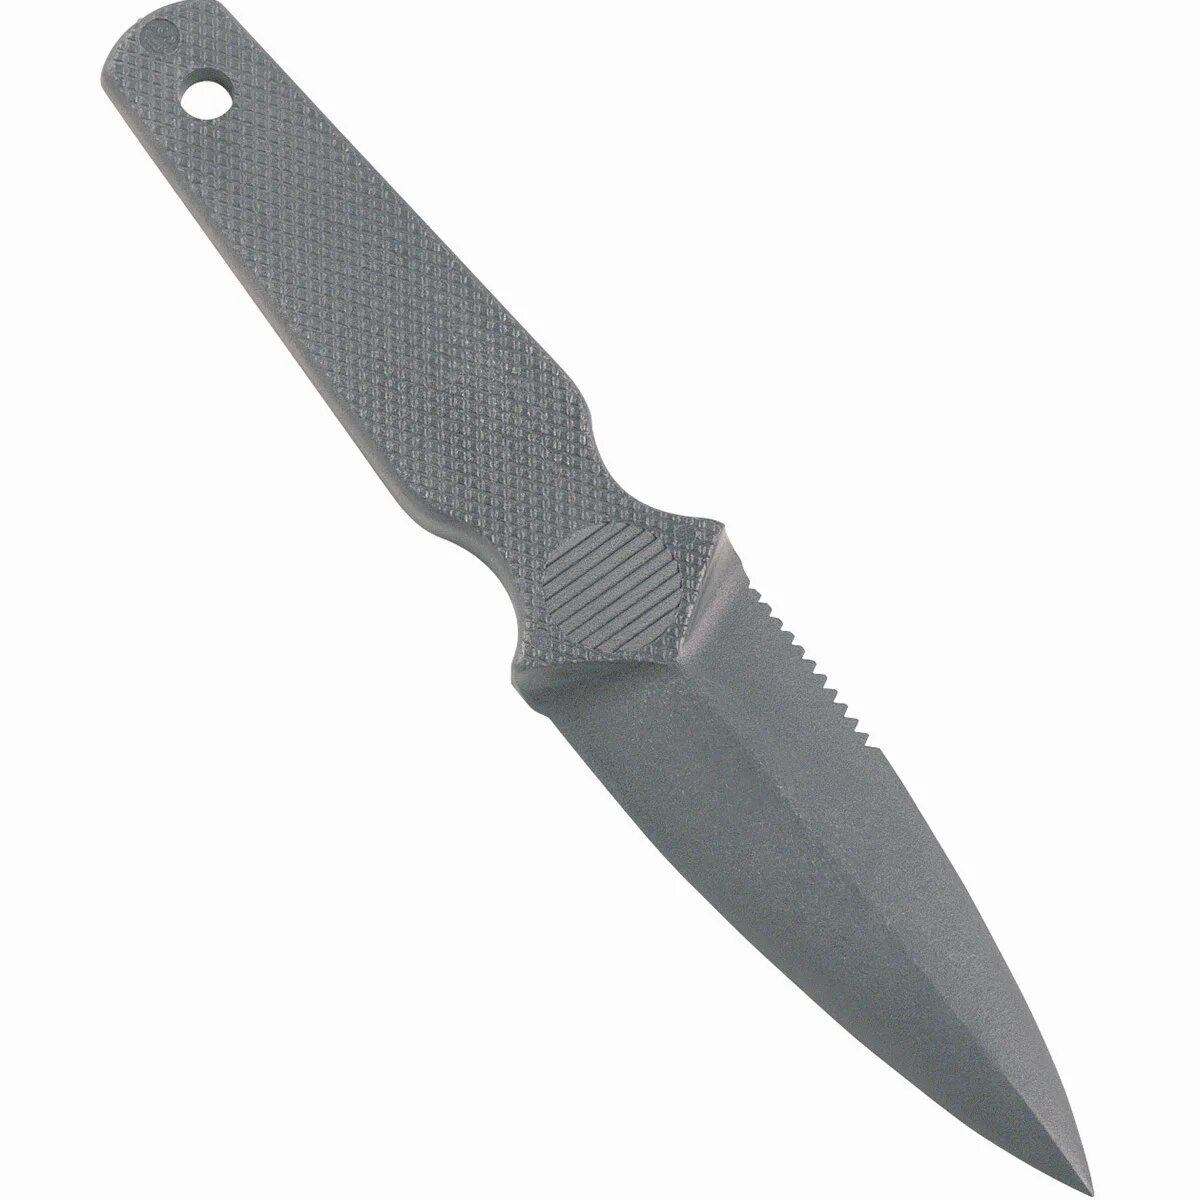 Lansky Knife. Лански пластиковый нож. Нож пластиковый Lansky. Куботан пластиковый Cold Steel 91mk Mini Koga sd2.